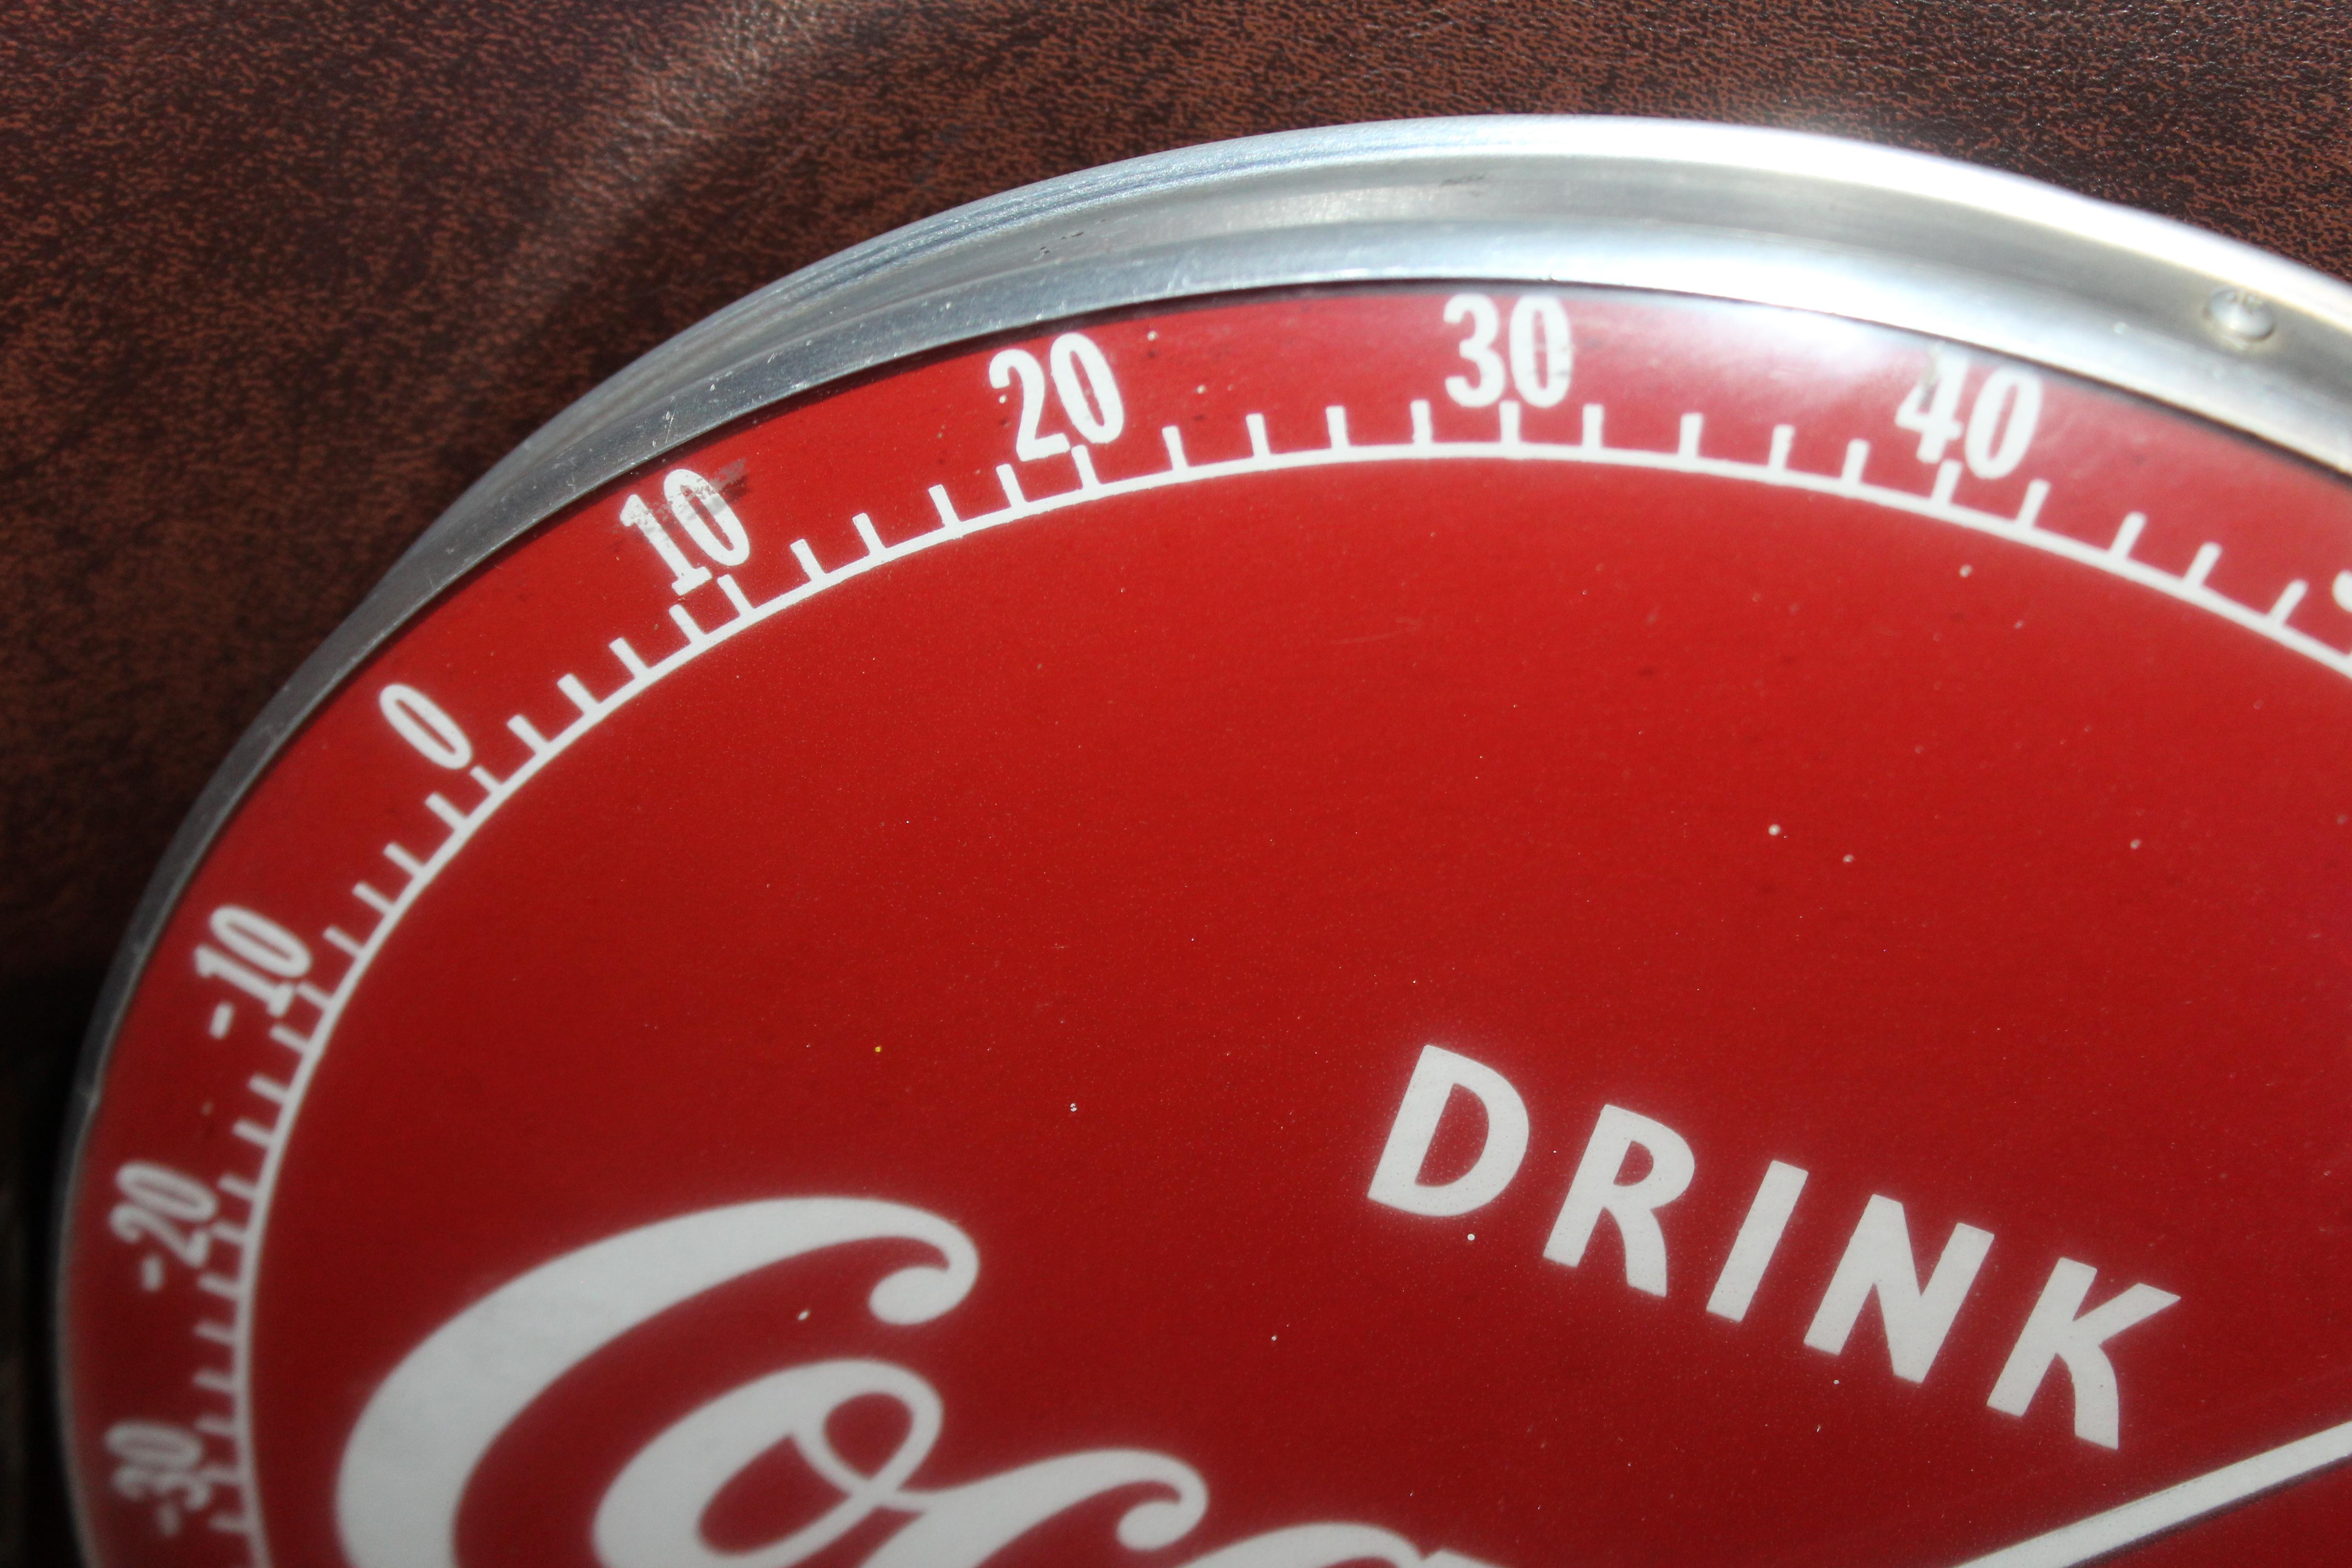 coca-cola thermometer price guide